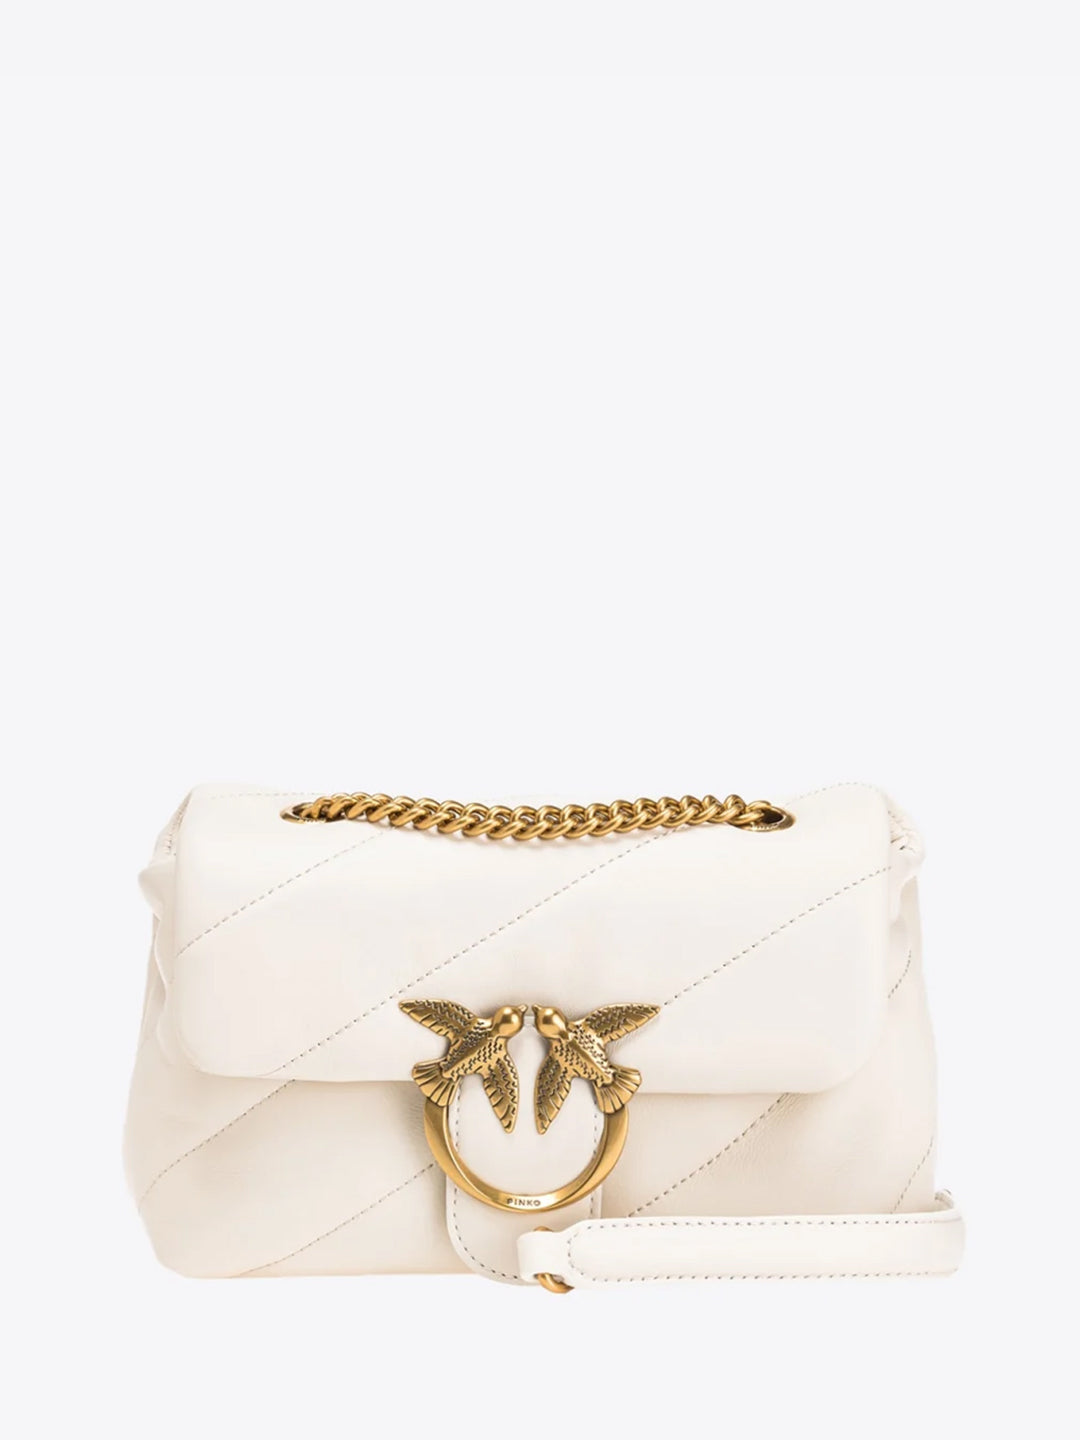 Pinko Love Puff Mini CL borsa bianco con catena metallica oro